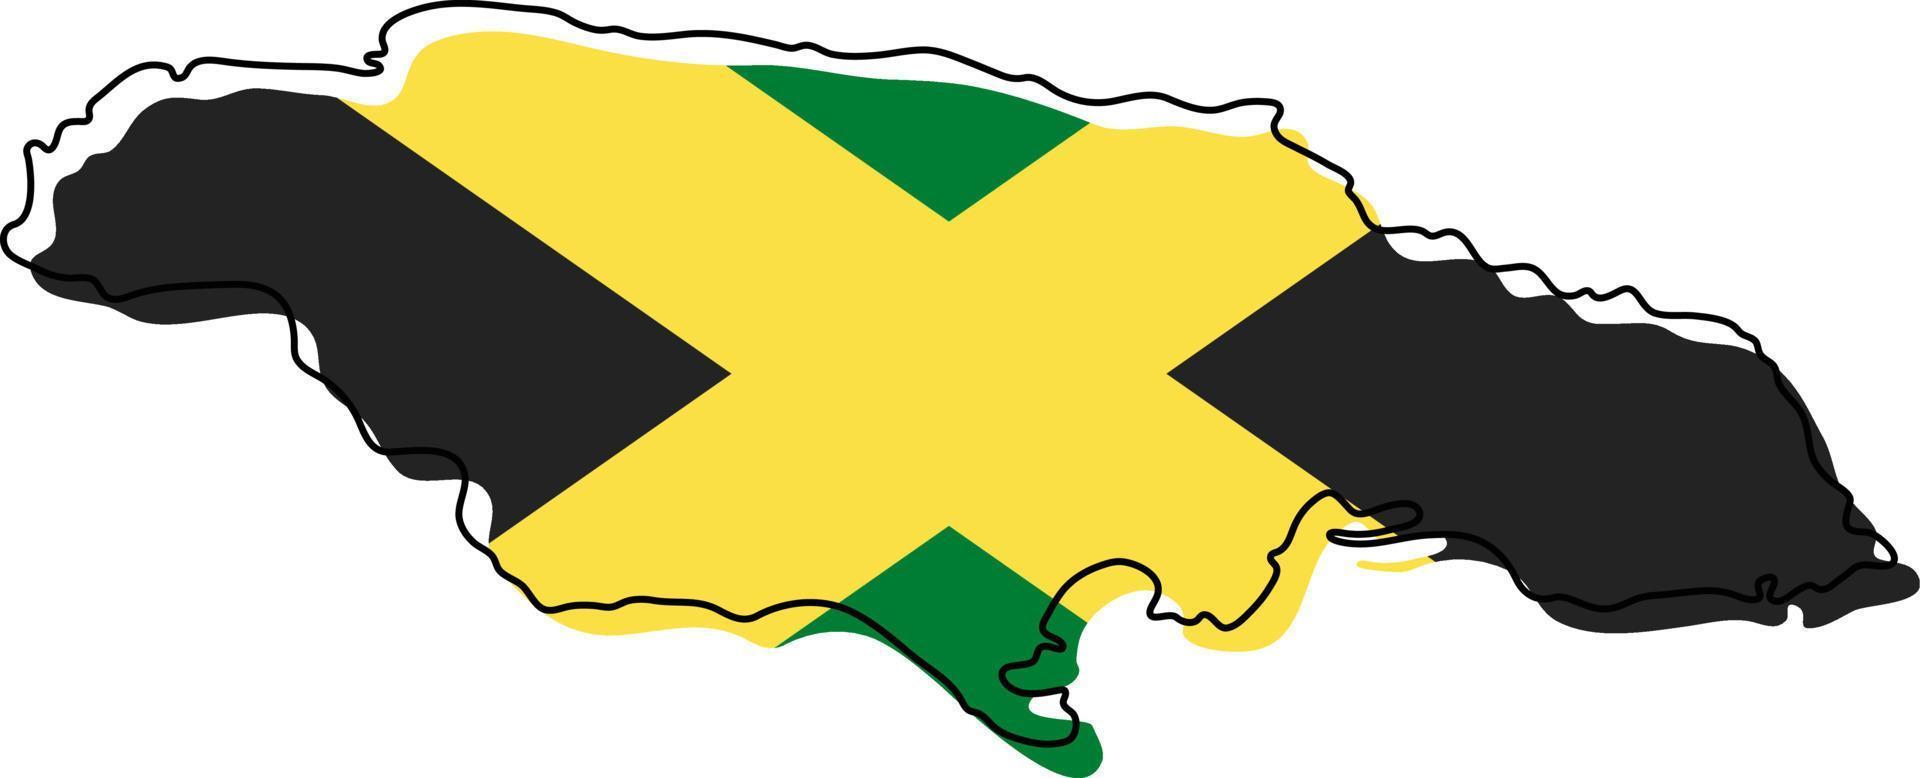 stilisierte umrißkarte von jamaika mit nationalflaggensymbol. Flaggenfarbkarte von Jamaika-Vektorillustration. vektor